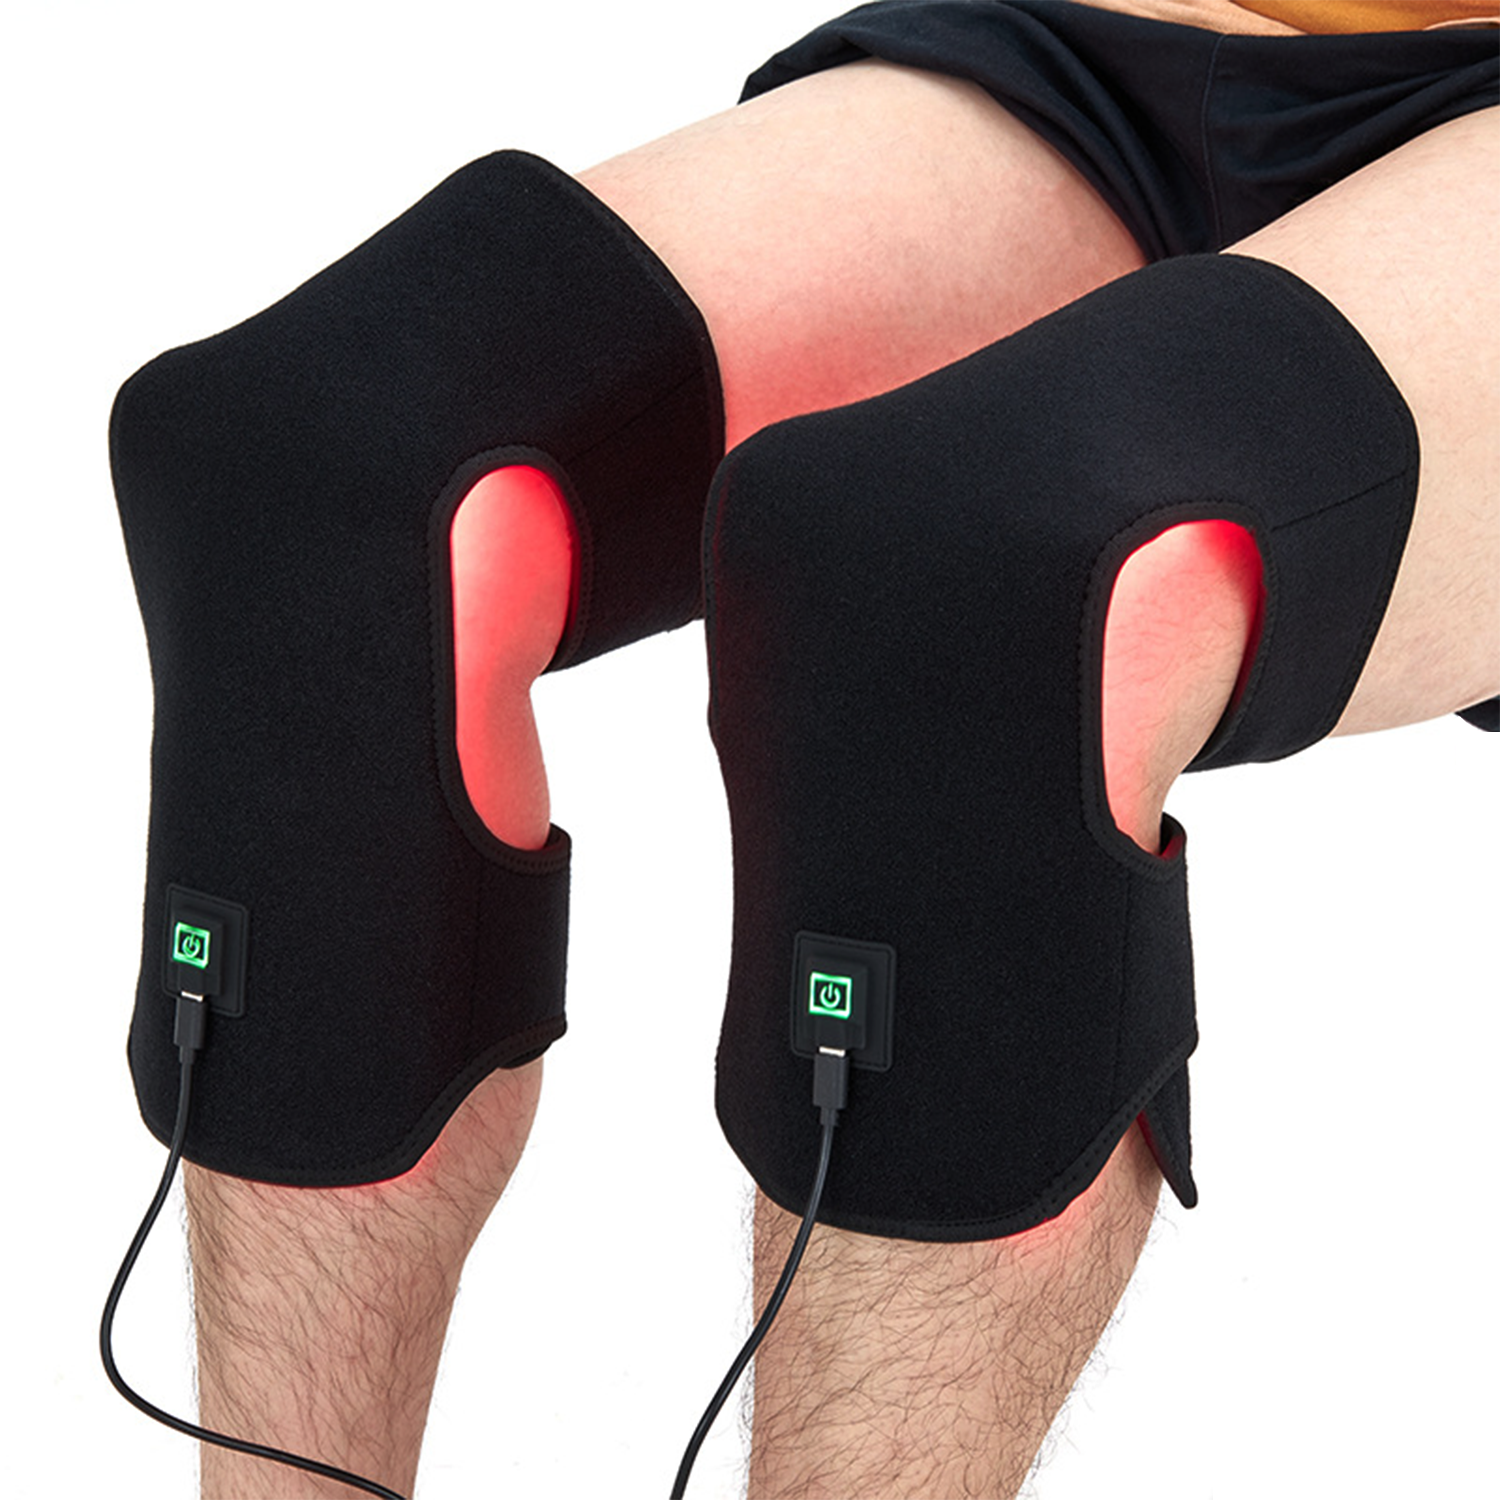 rødt lys terapi ved knæskader